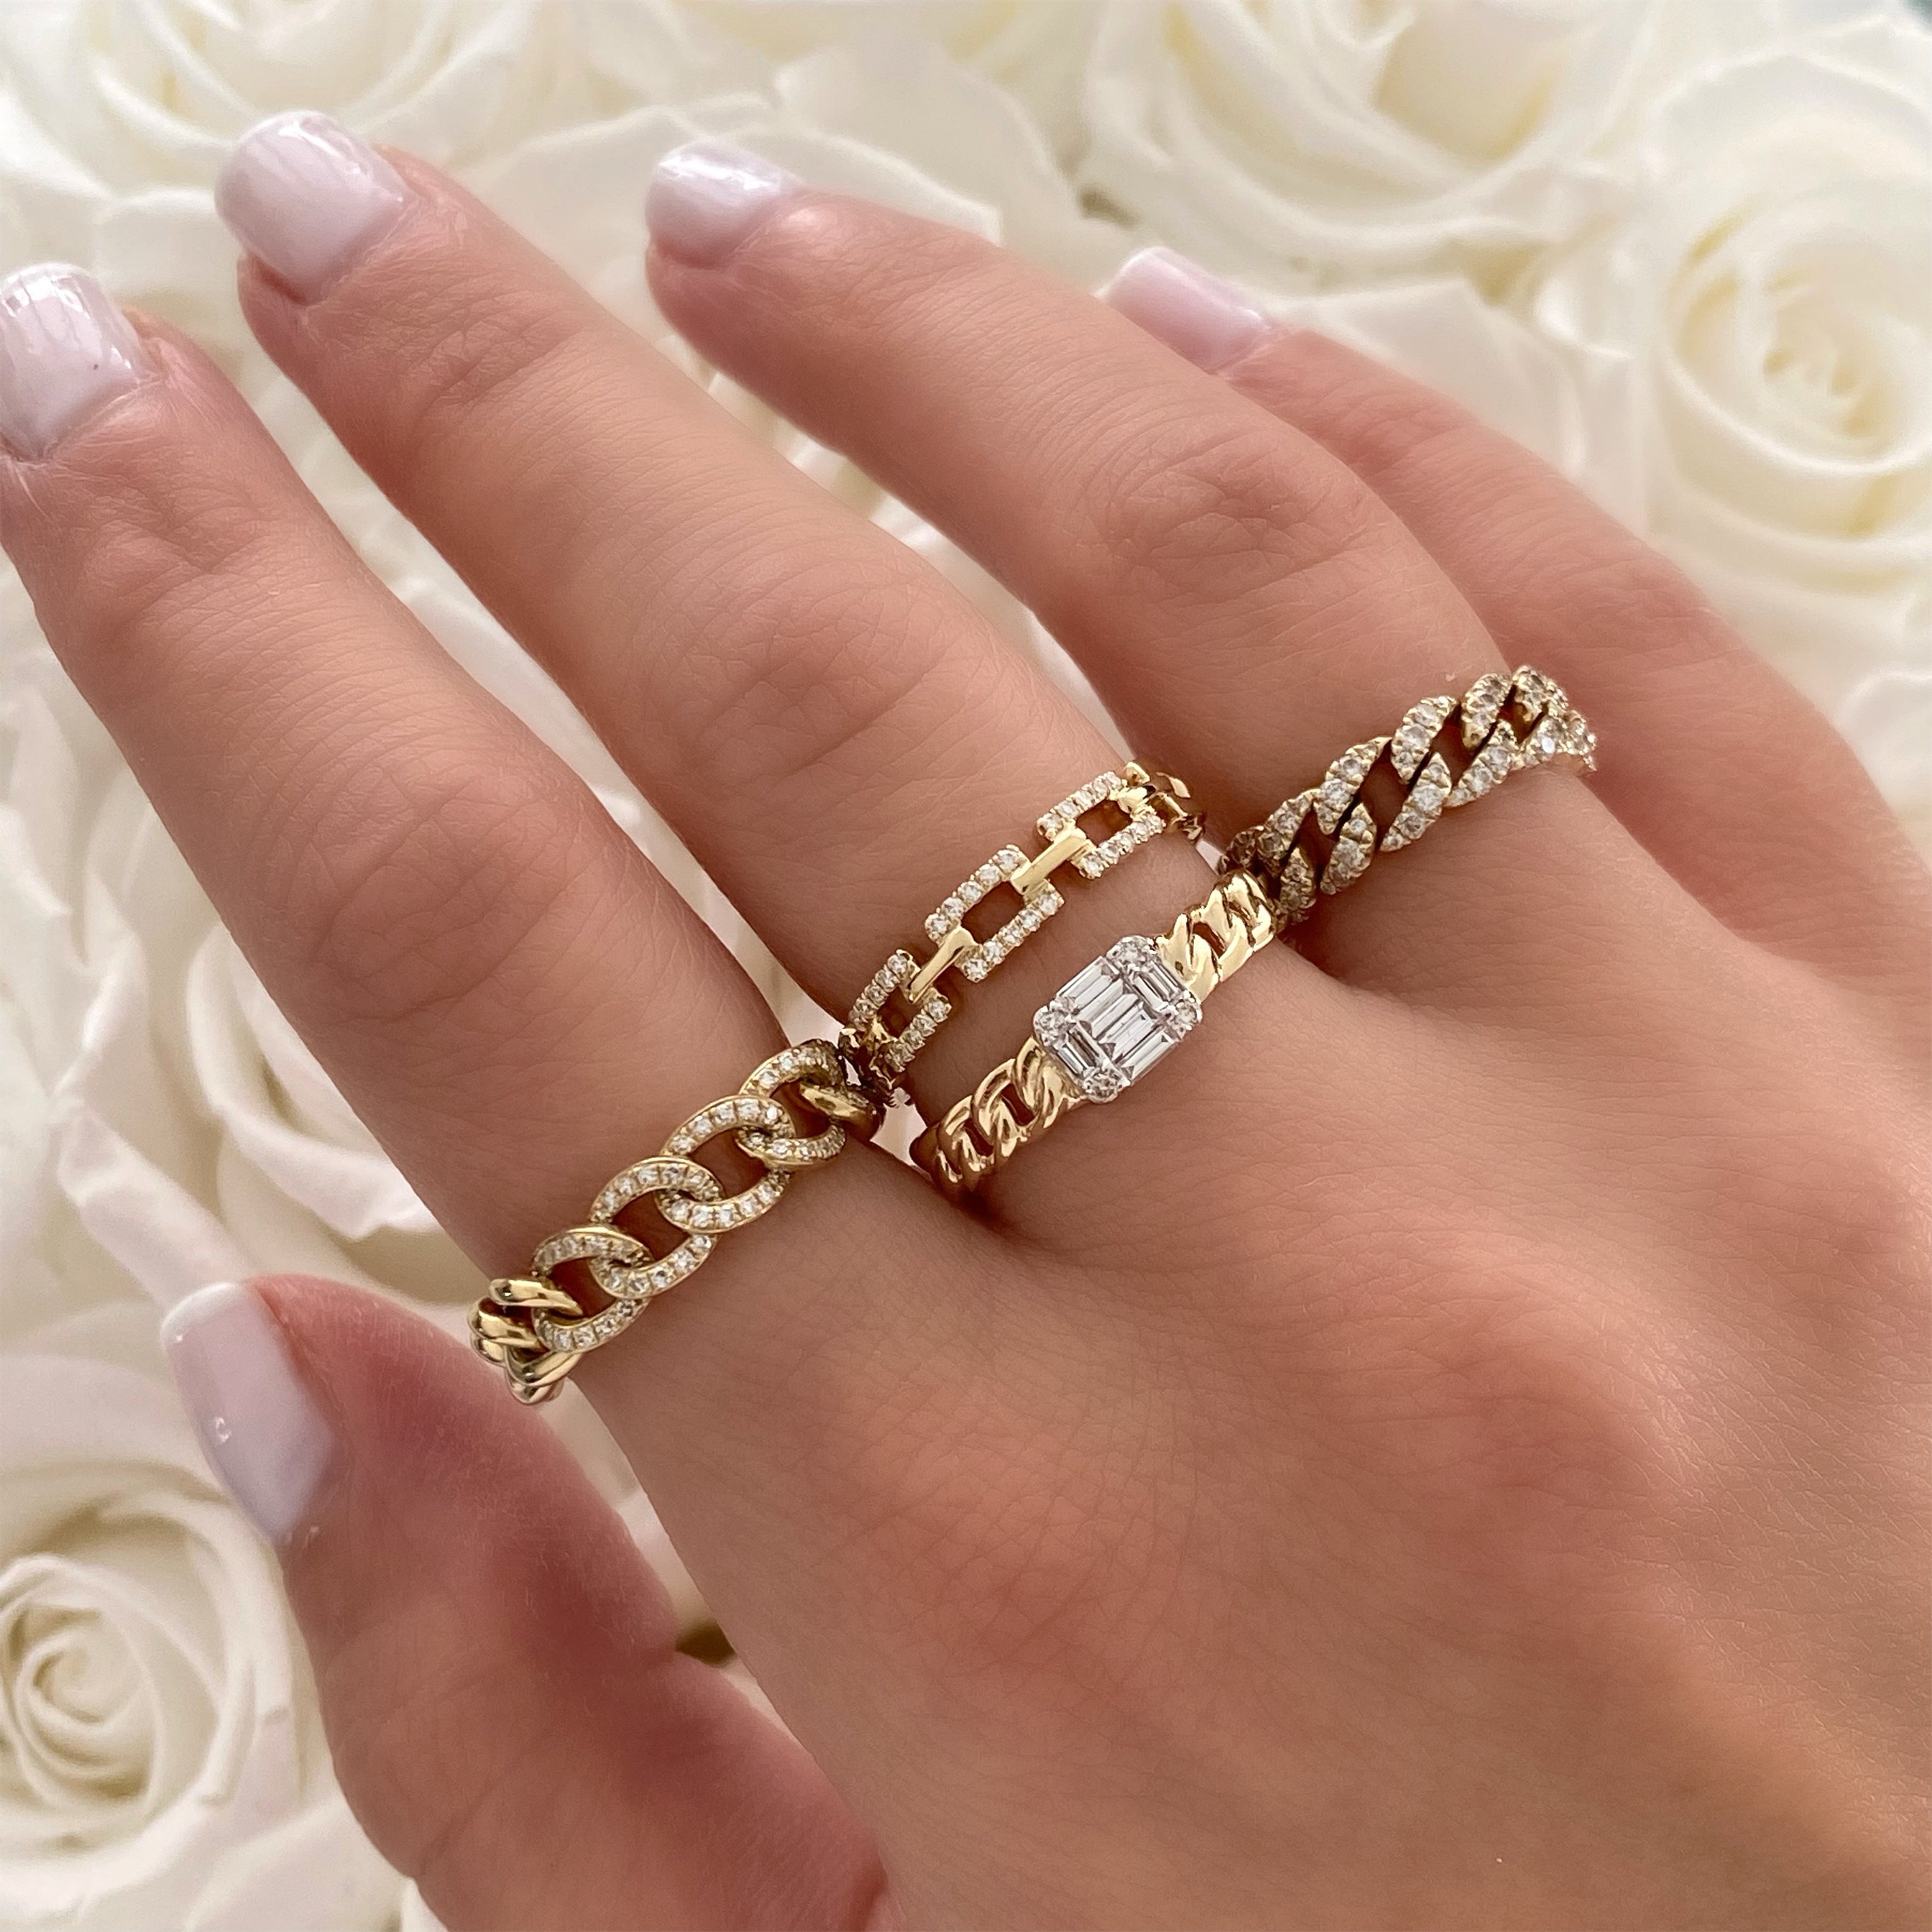 Rings by Izakov Diamonds + Fine Jewelry